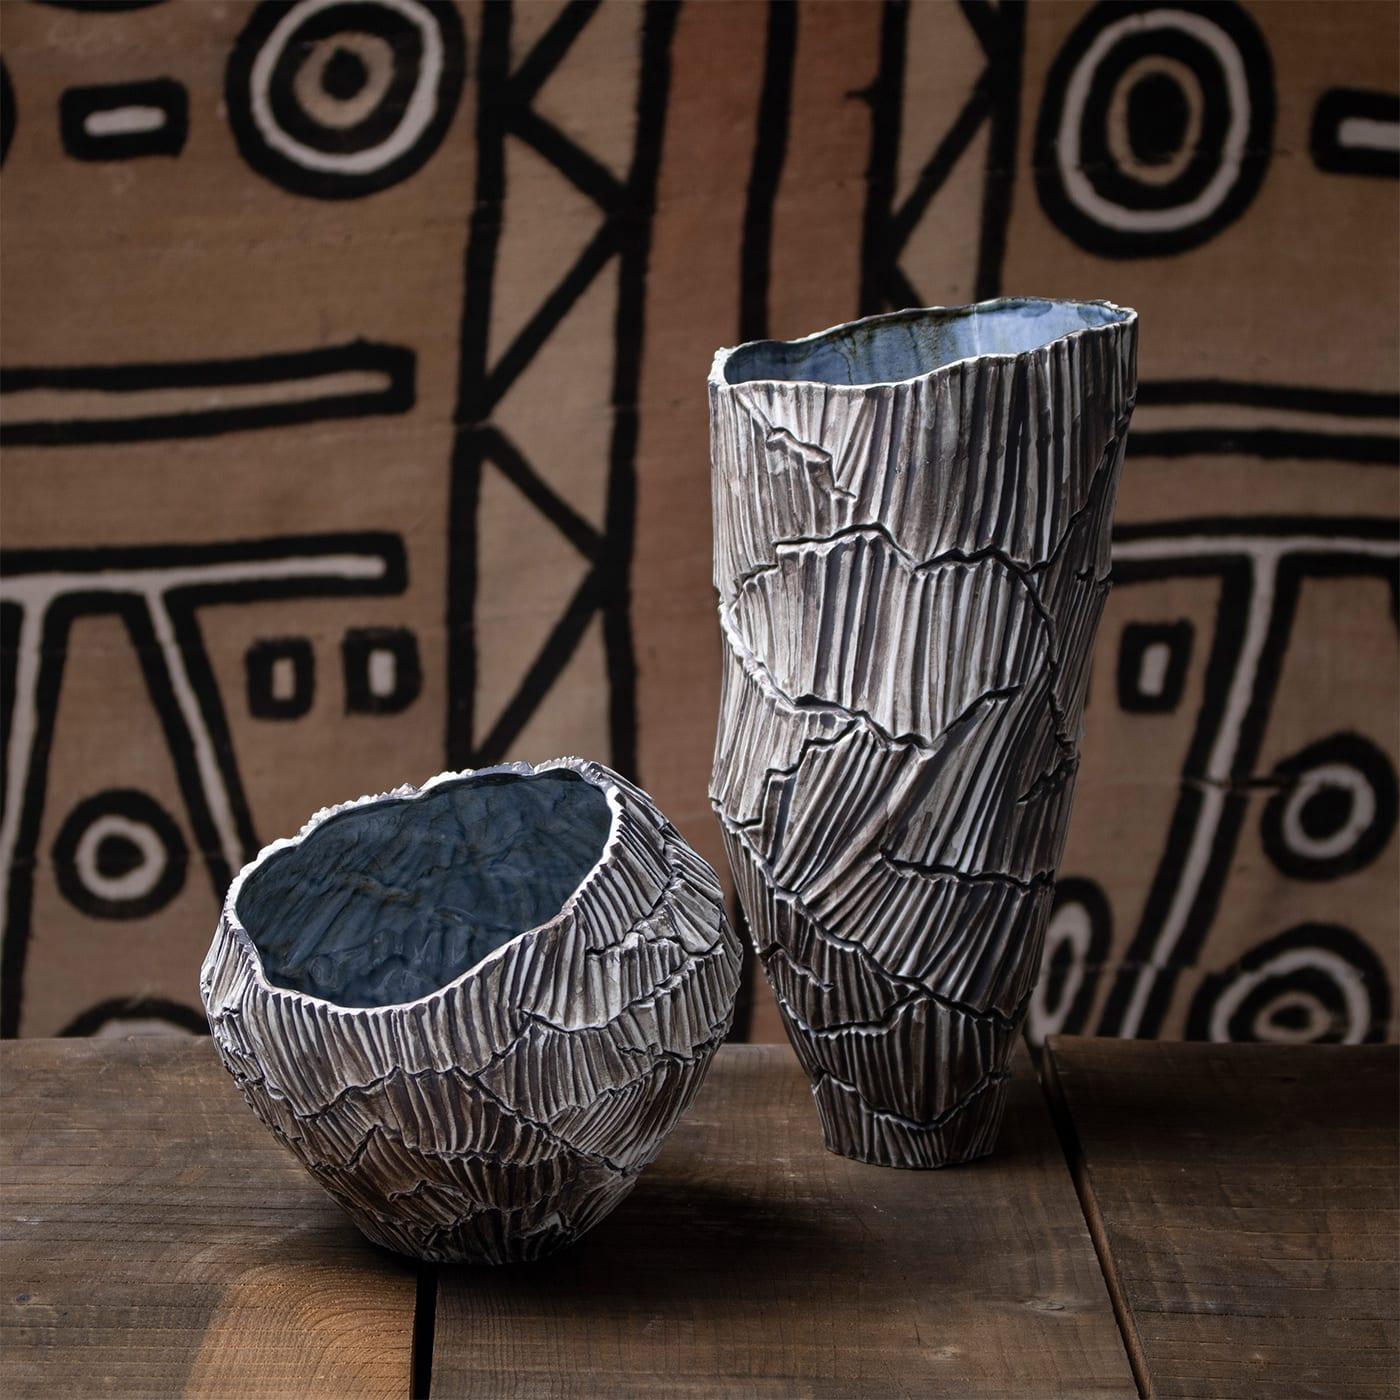 Zefiro Rock ist eine dekorative Schale aus Porzellan, die zur Collection'S von Anemos gehört. Die sanften Kurven der vom Wind geformten Kanäle erzeugen einen einzigartigen Rhythmus auf der Oberfläche, der von den tiefen Rissen des trockenen Landes